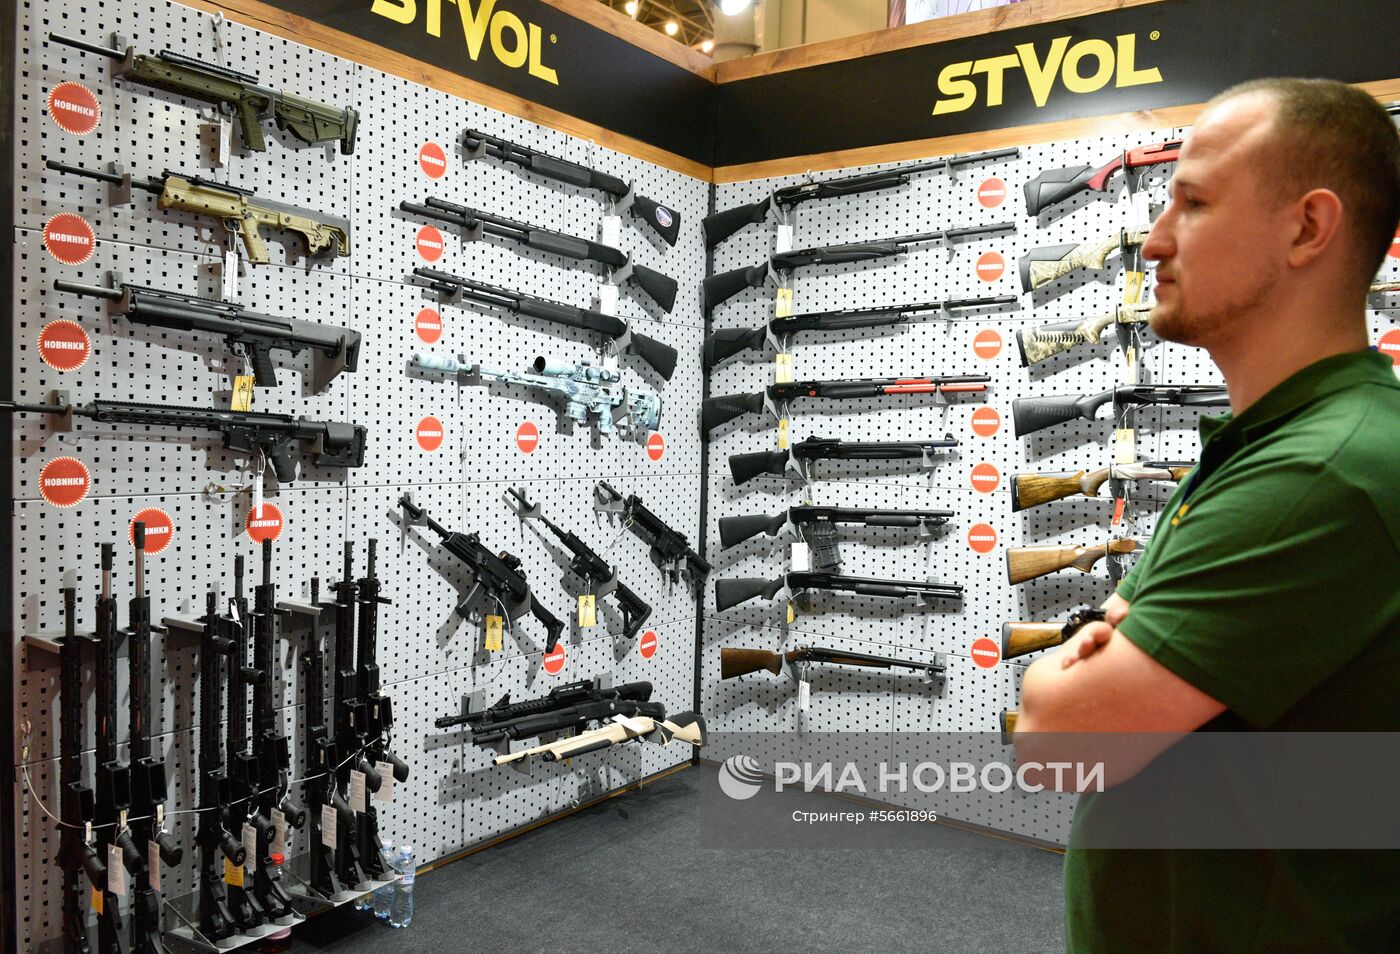 Открытие выставки "Оружие и безопасность-2018" в Киеве